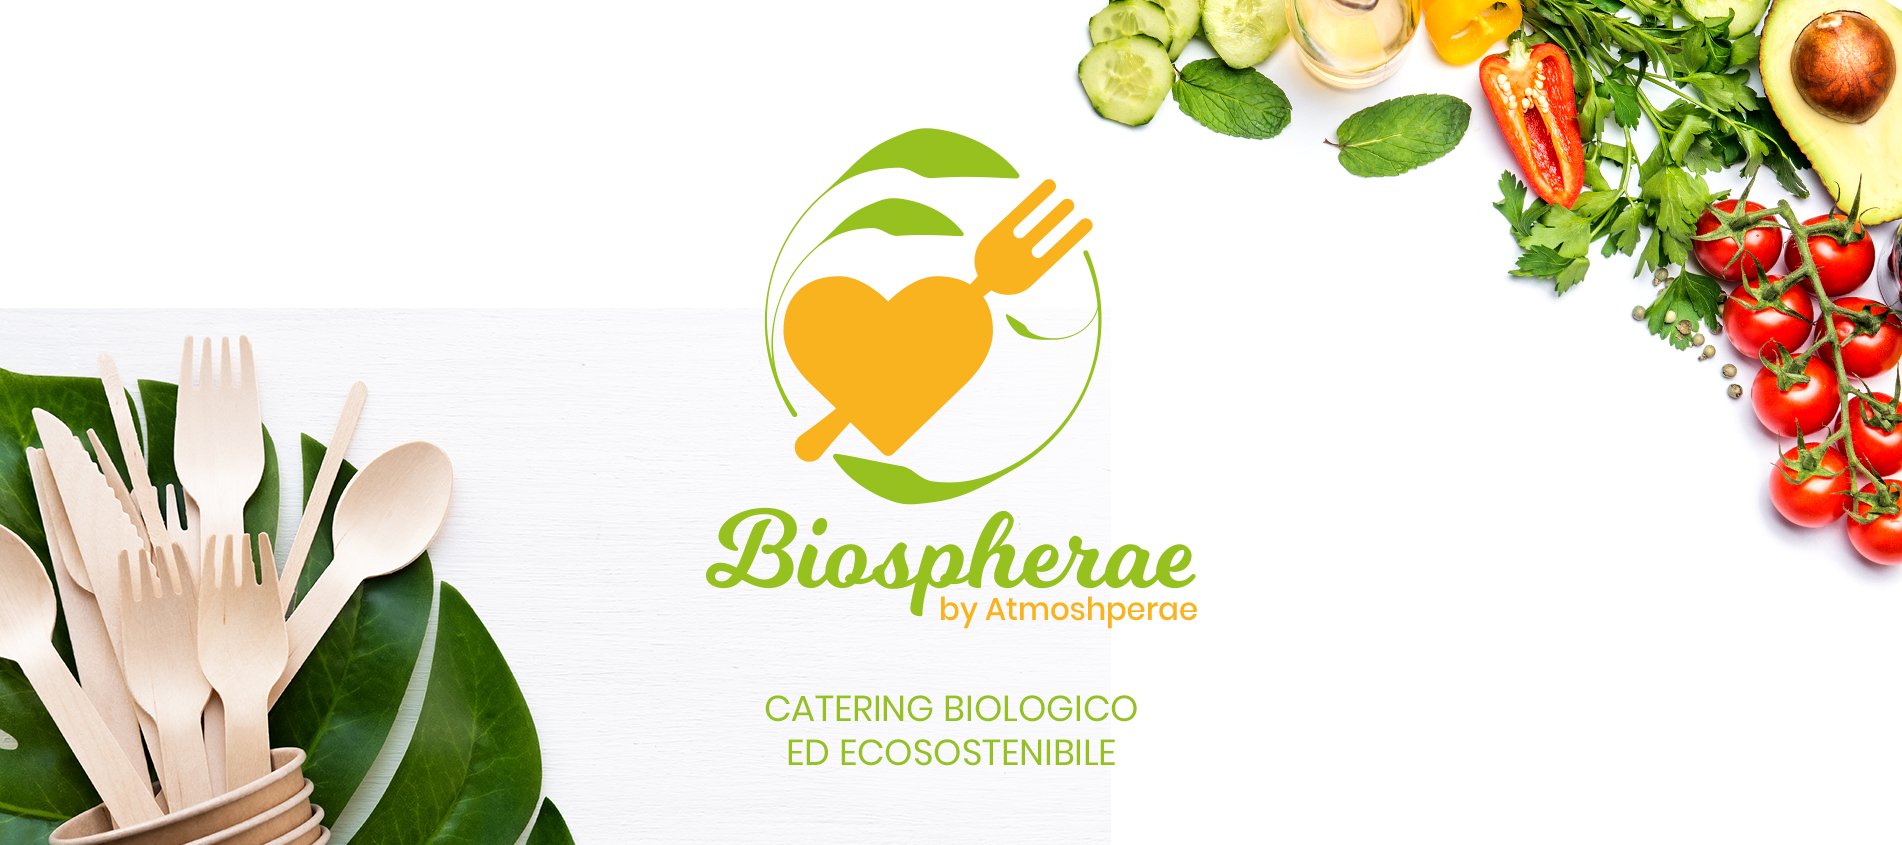 Biospheare il servizio di catering biologico ed ecologico di atmospherae